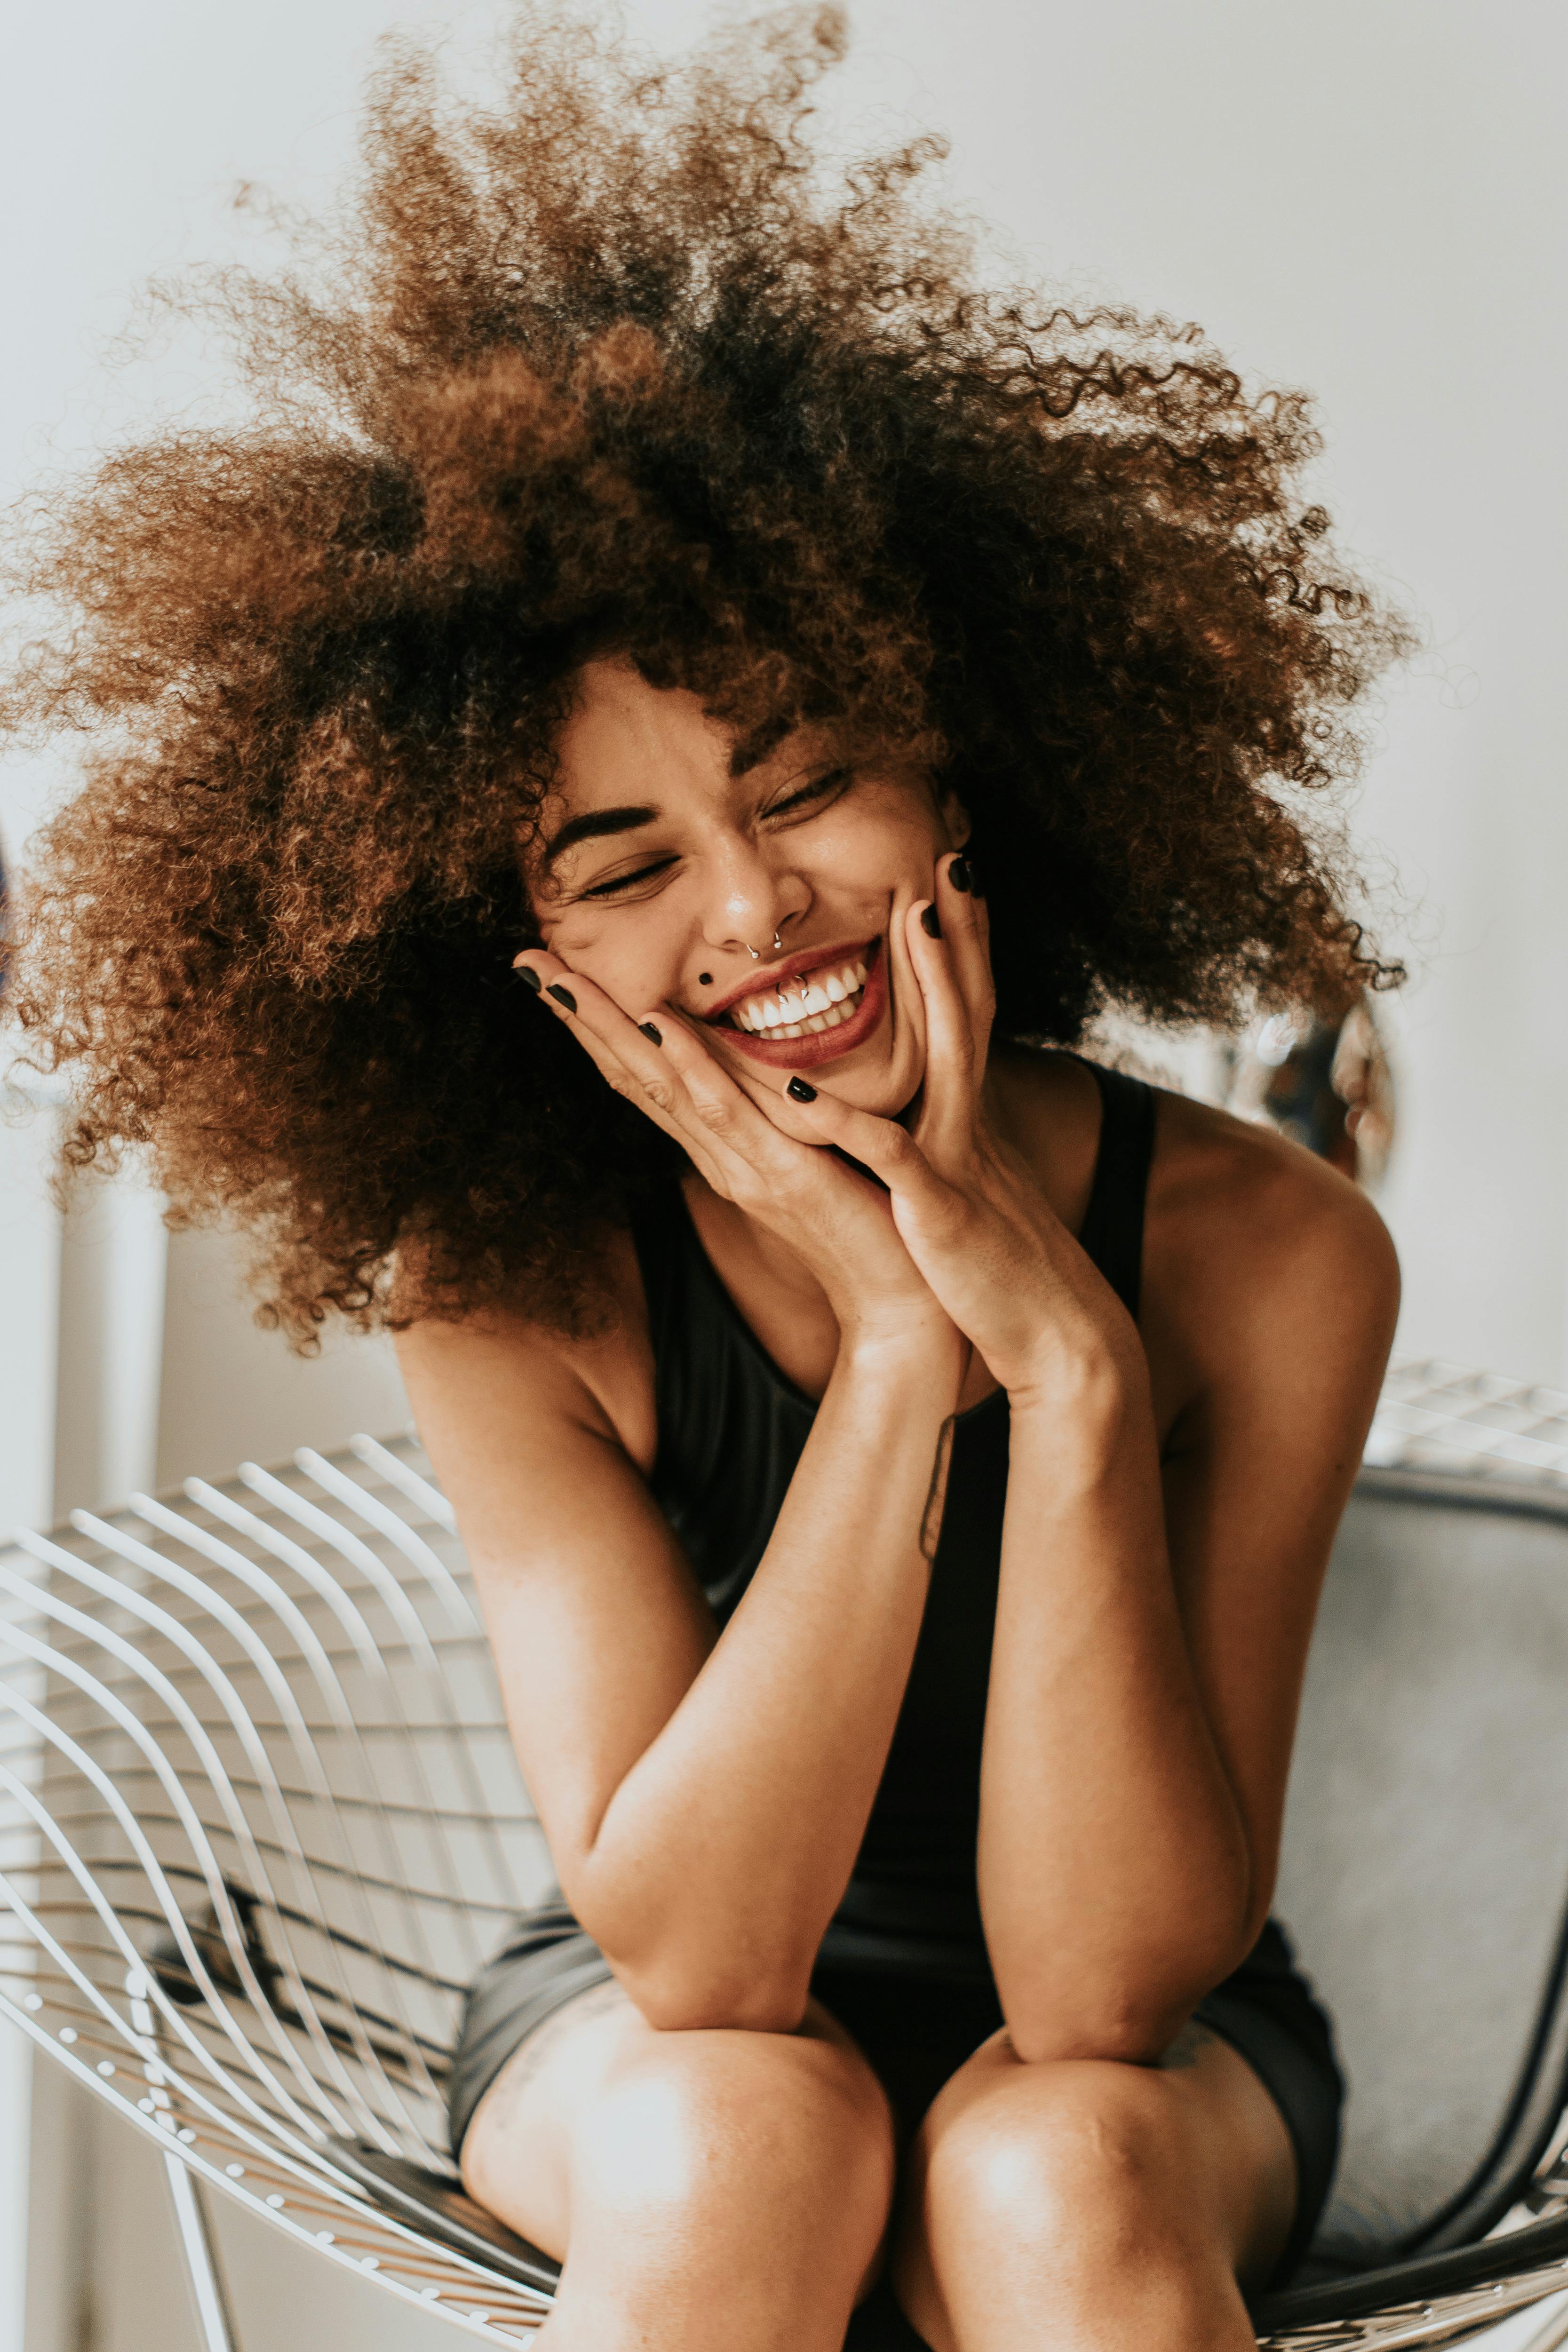 Una mujer emocionada y sonriente sujetándose la cara | Fuente: Pexels